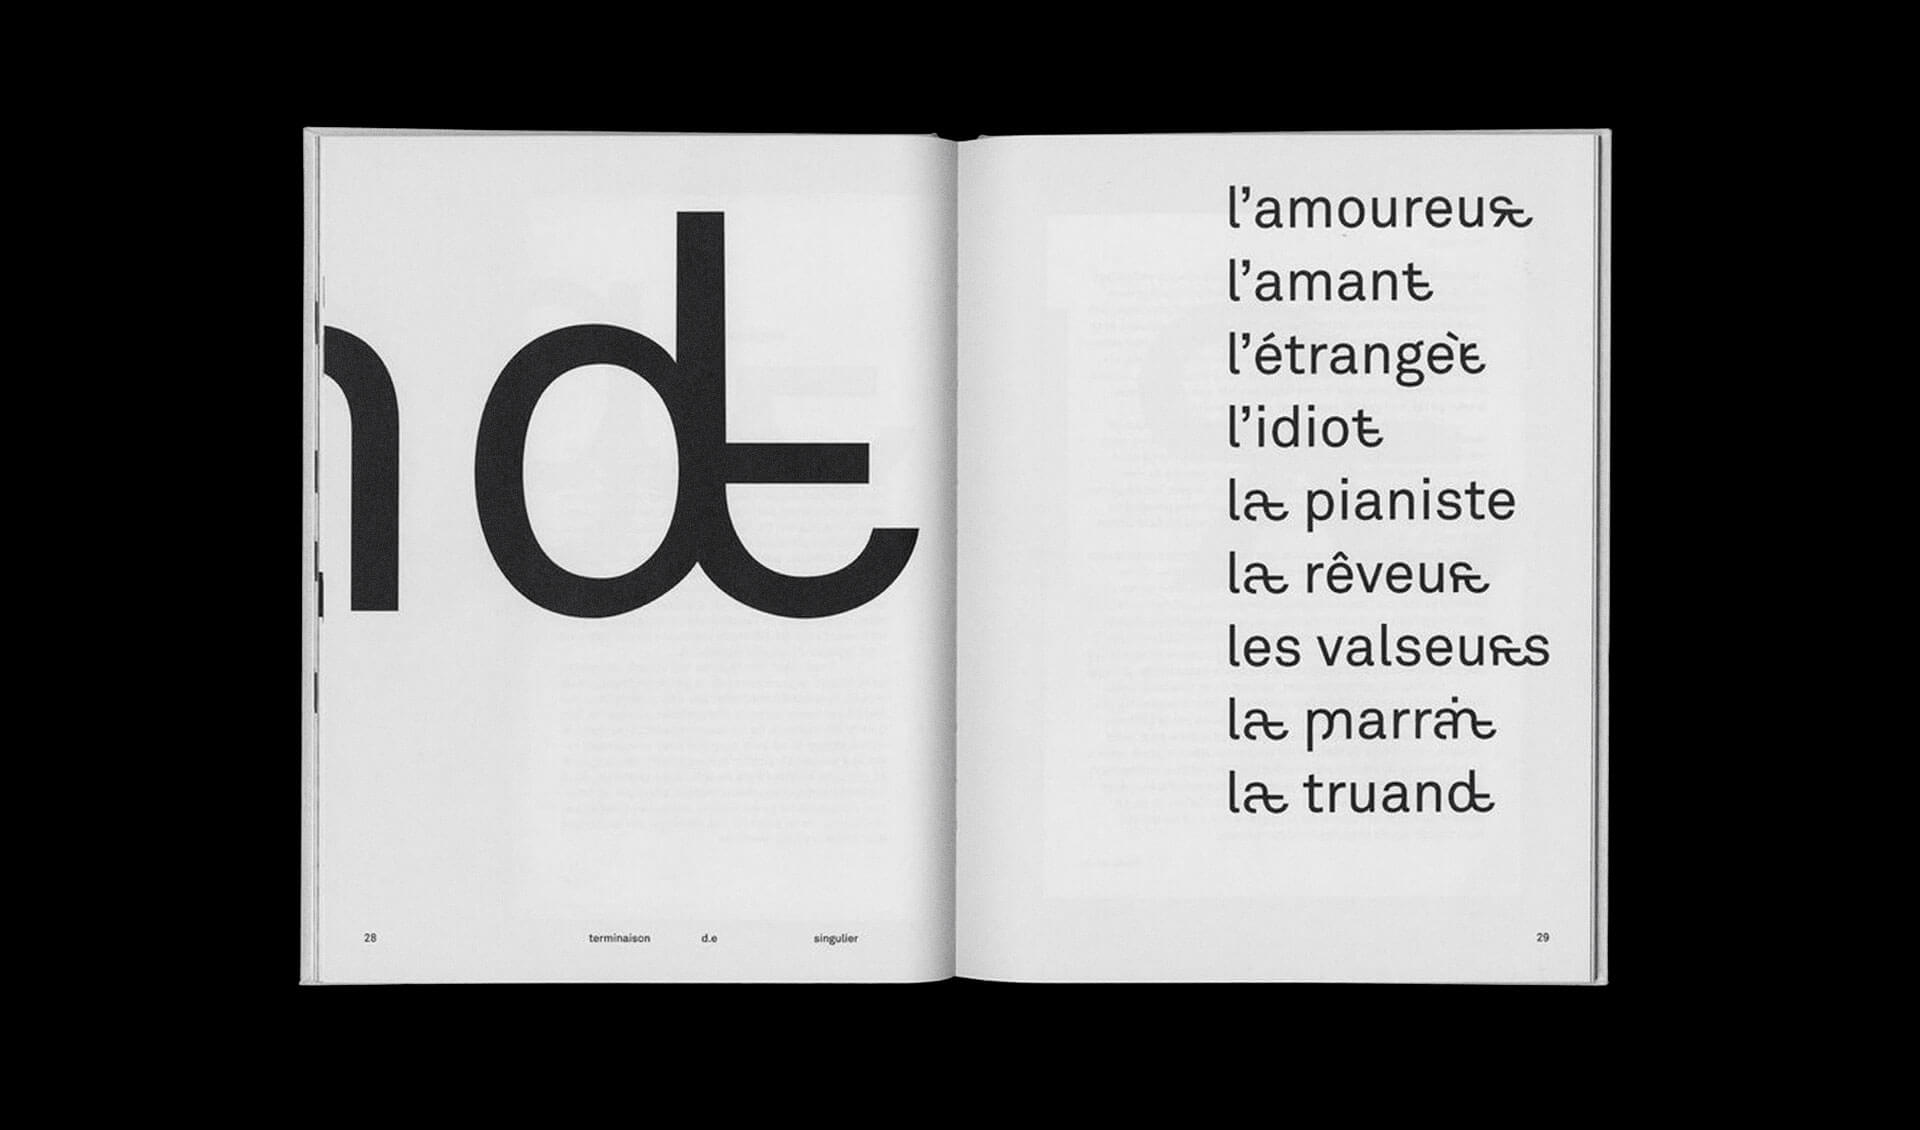 Extrait du diplome sur la typographie inclusive de Tristan Bartolini - 2